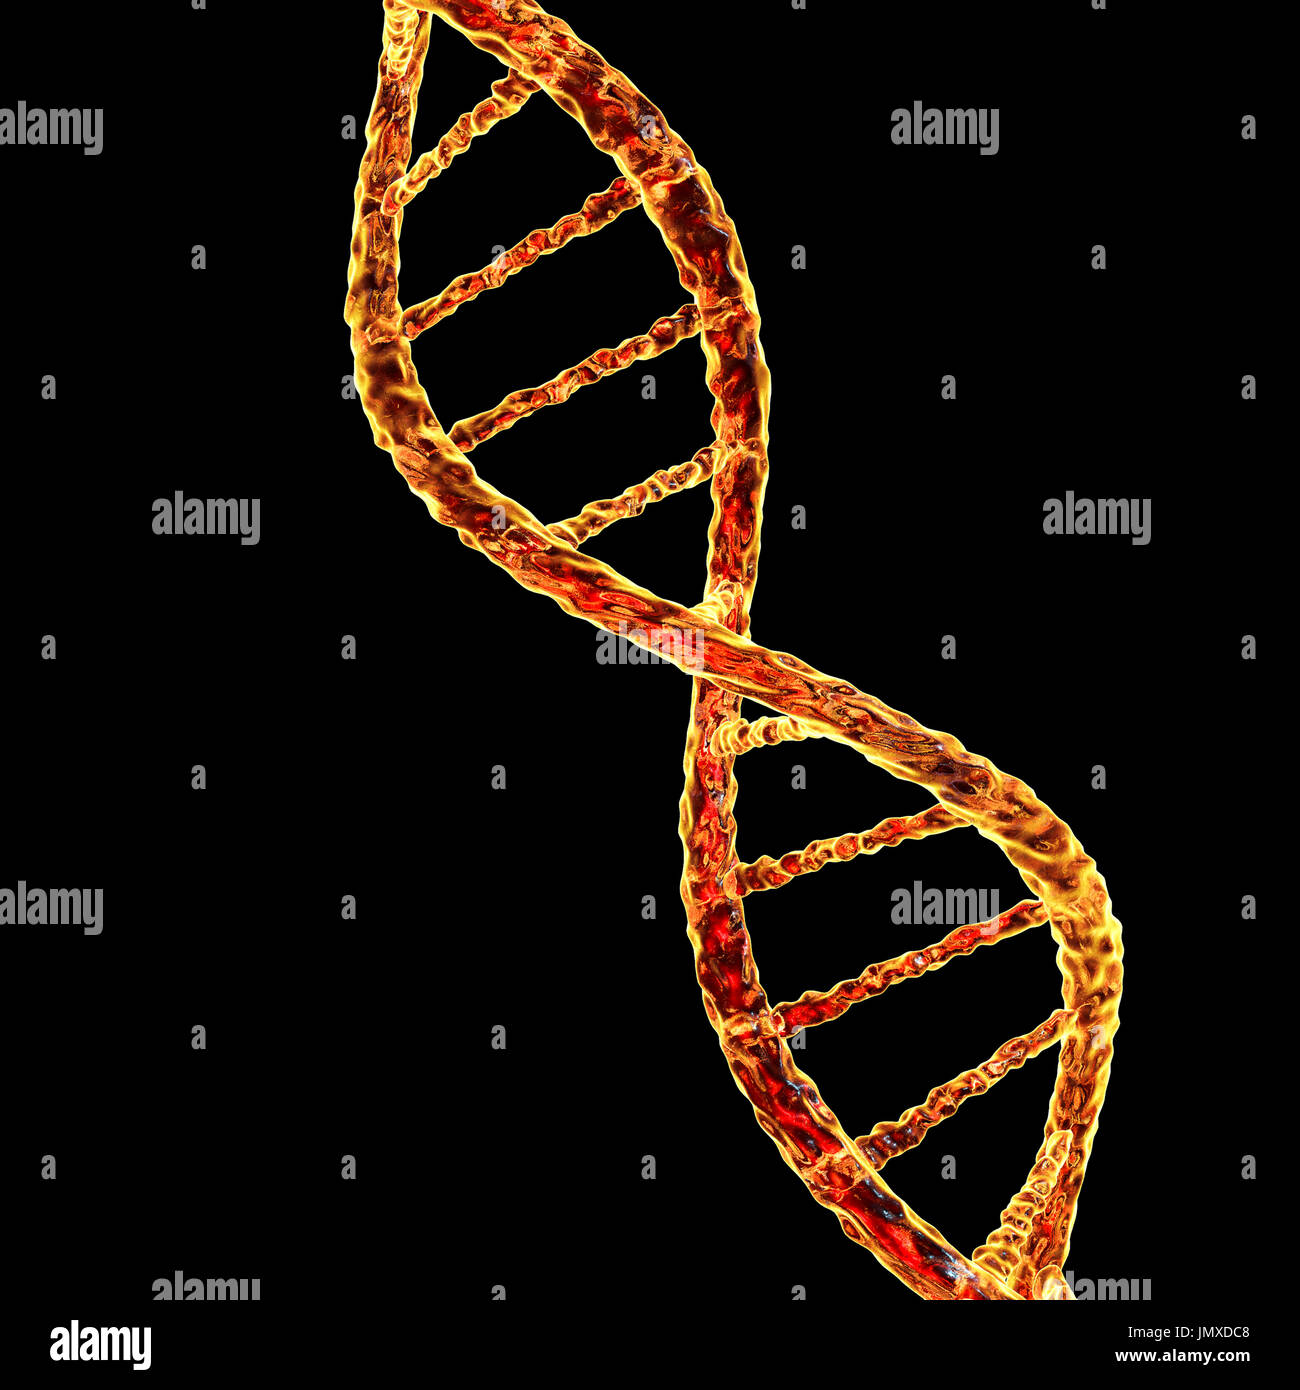 DNA-Molekül, Computer-Grafik. Das Molekül der DNA (Desoxyribonukleinsäure) besteht aus einer langen Doppel-Helix von Phosphaten und Zucker, verbunden durch Paare von Nukleotidbasen (Kugeln und Stäbe). Diese Basenpaaren bilden die Sprossen der Spirale Leiter hier gesehen. Die Reihenfolge der diese Basenpaare bilden den genetischen Code, der die Grundlage allen Lebens auf der Erde. Gensequenz eines Individuums steuert ihr Wachstum und ihre Entwicklung, und es wird an ihre Kinder weitergegeben. Variationen in der genetischen Sequenz während Millionen von Jahren der Evolution haben die Vielfalt des Lebens auf der Erde produziert. Stockfoto